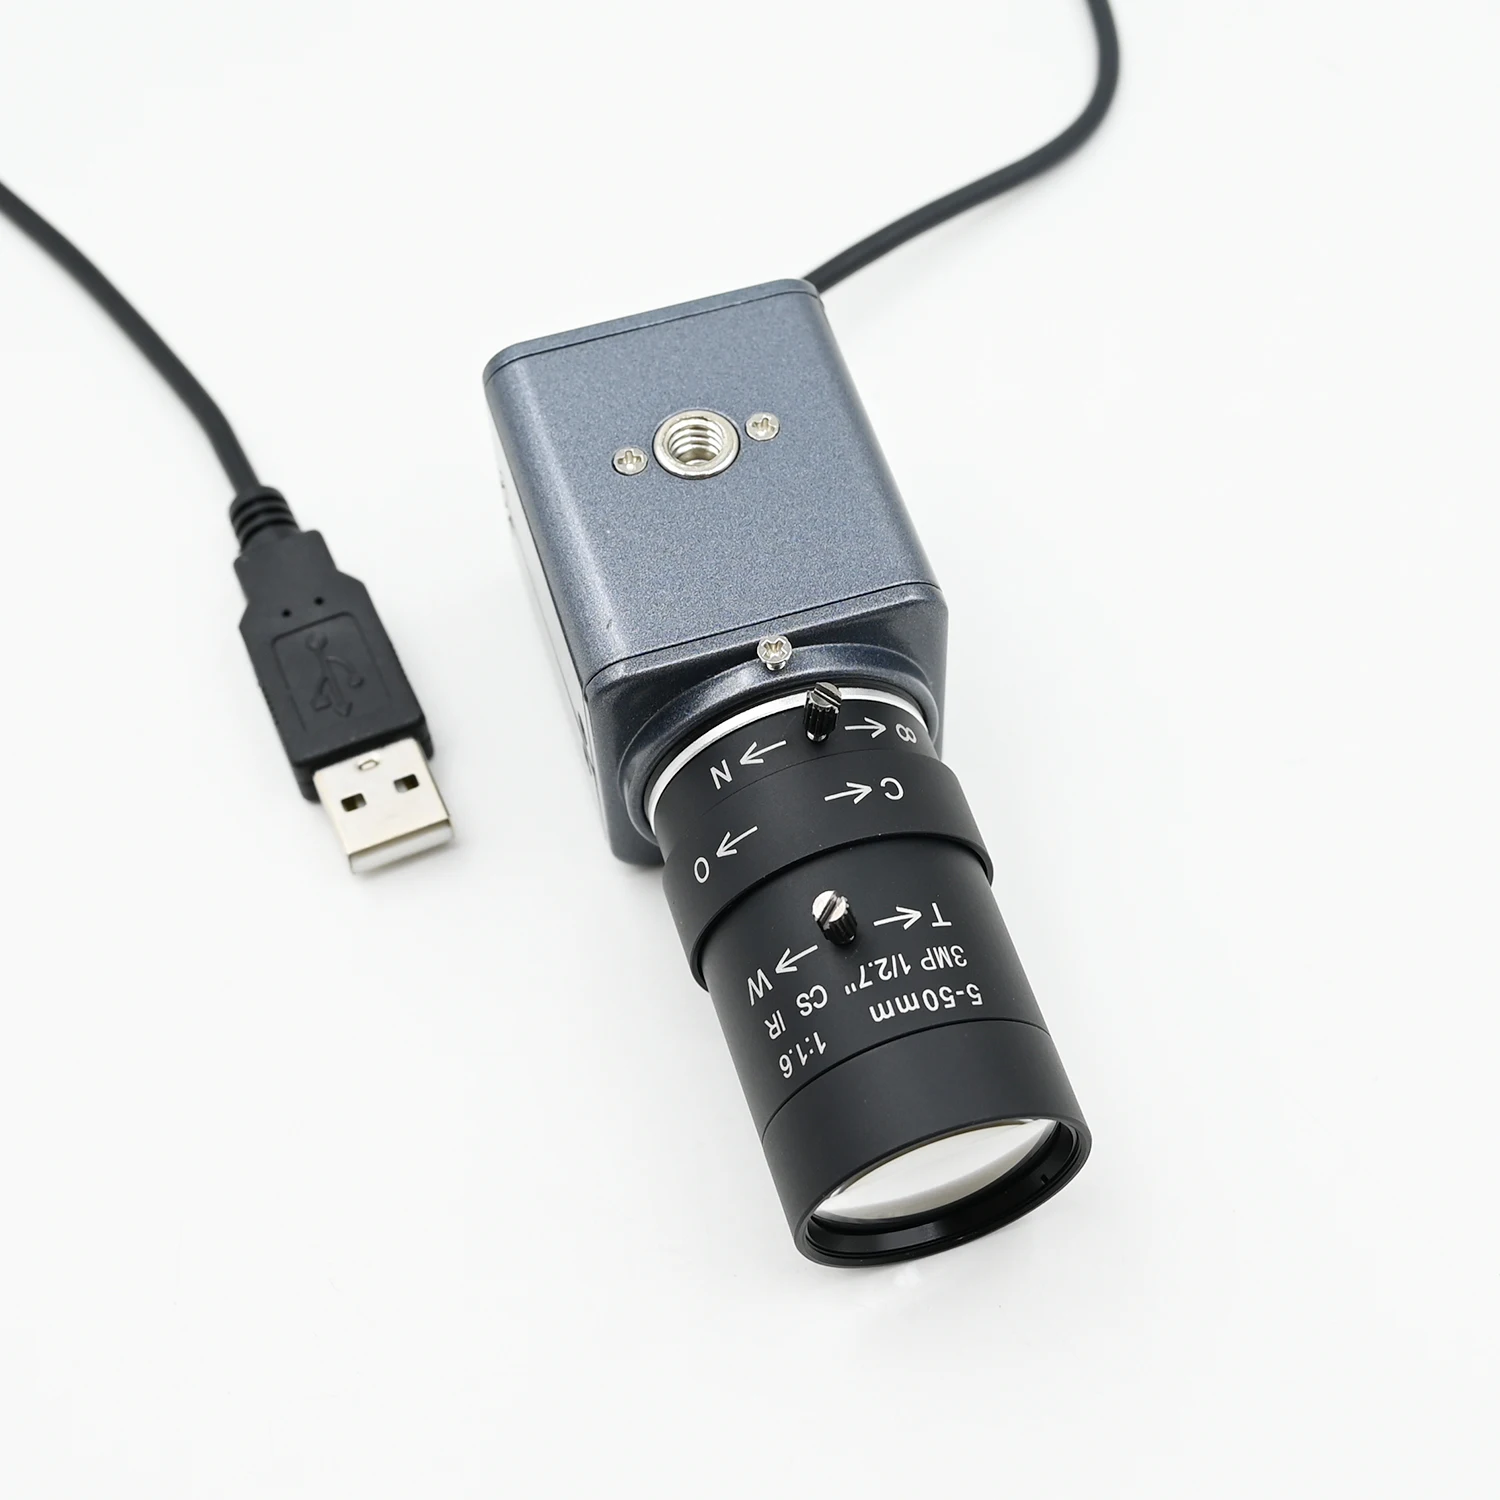 Монохромная камера OV9281 с глобальной затвором, 120fps, USB, 720p, высокоскоростная веб-камера Mini Box с варифокальным объективом 5-50 мм, 2,8-12 мм, X